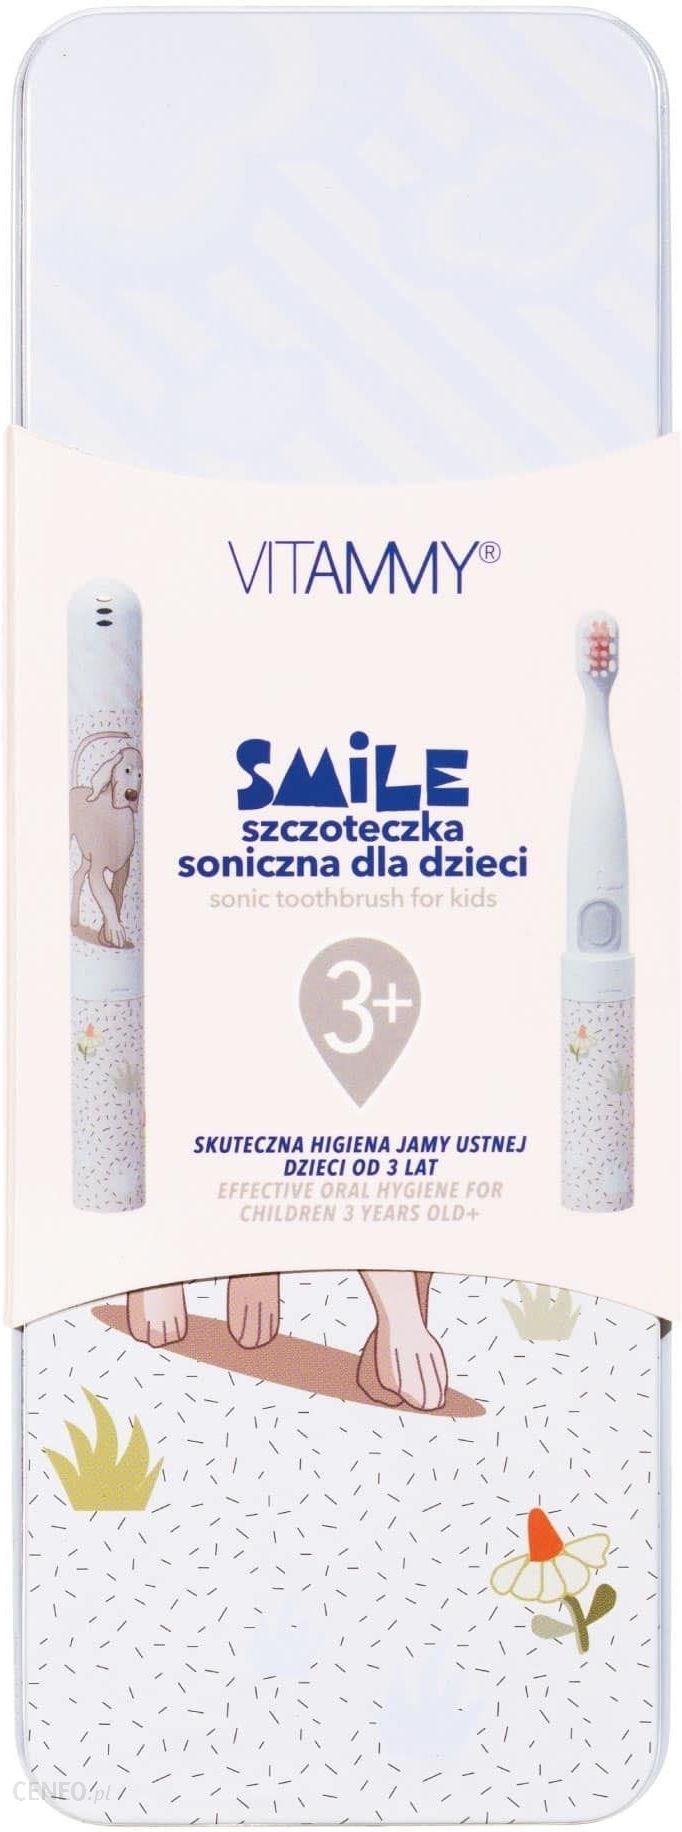 Vitammy Smile pies Szczoteczka soniczna do zębów mlecznych dla dzieci 3+ z etui